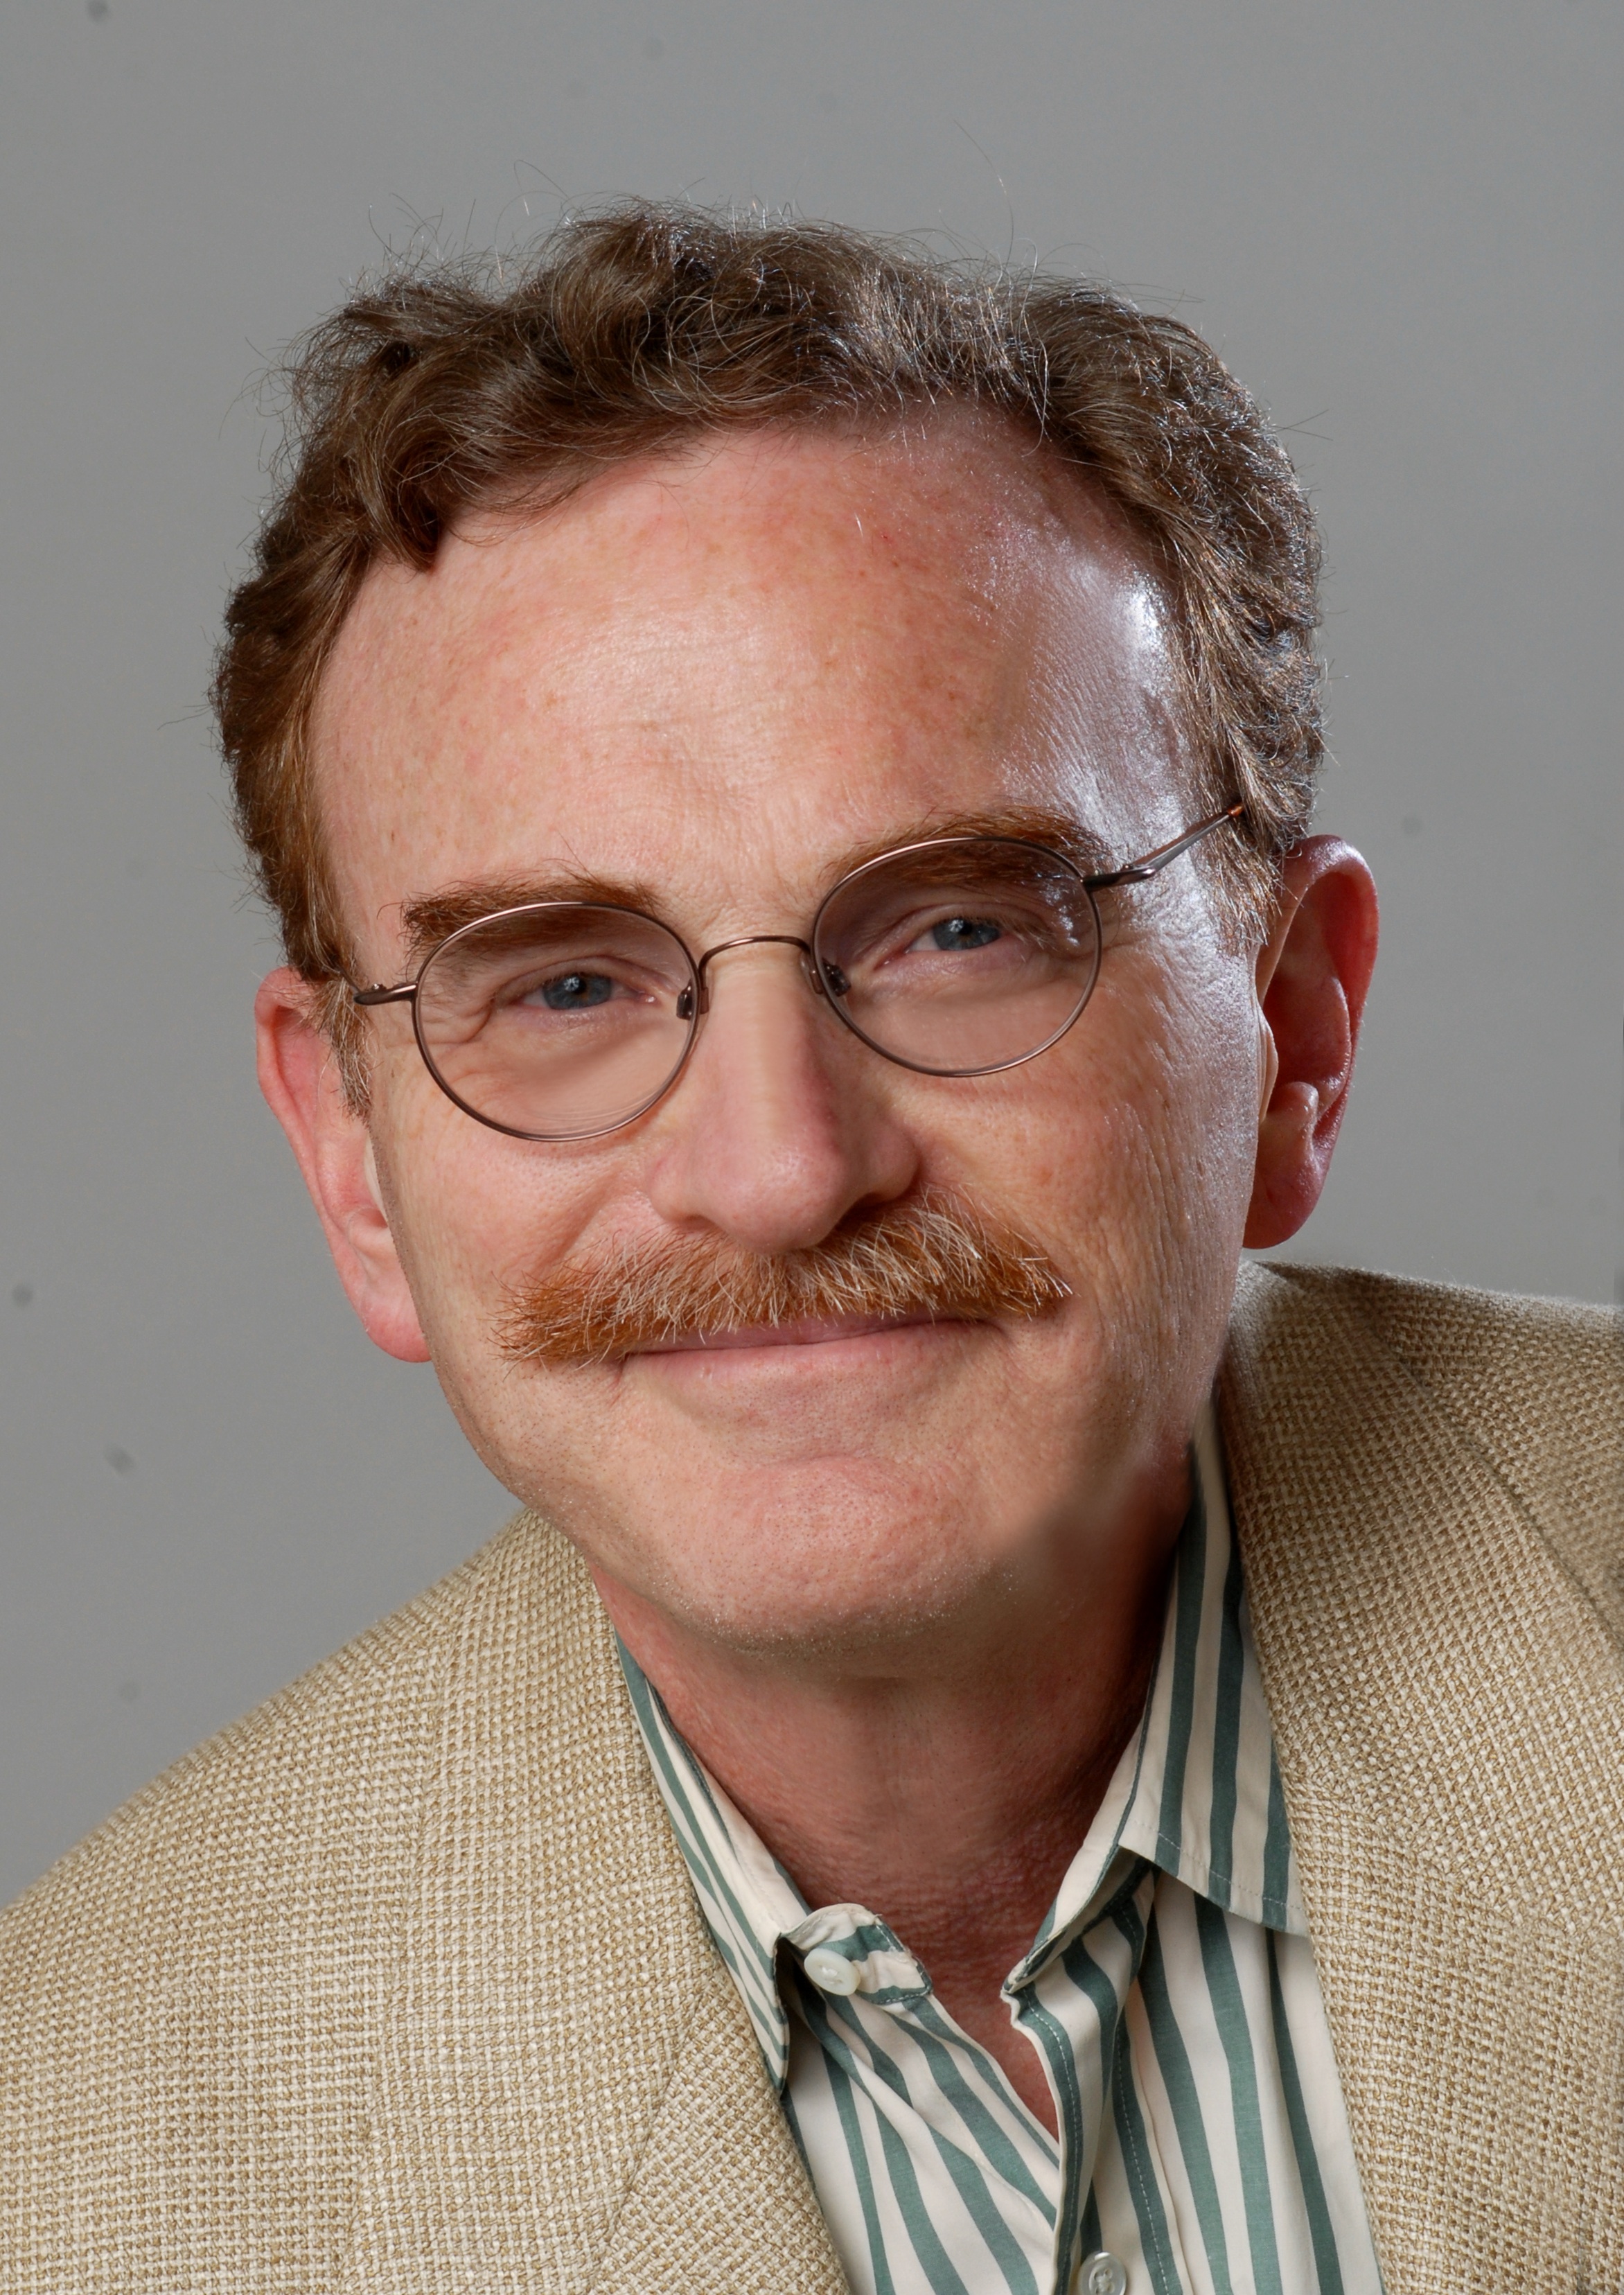 Randy Schekman, Nobel Laureate